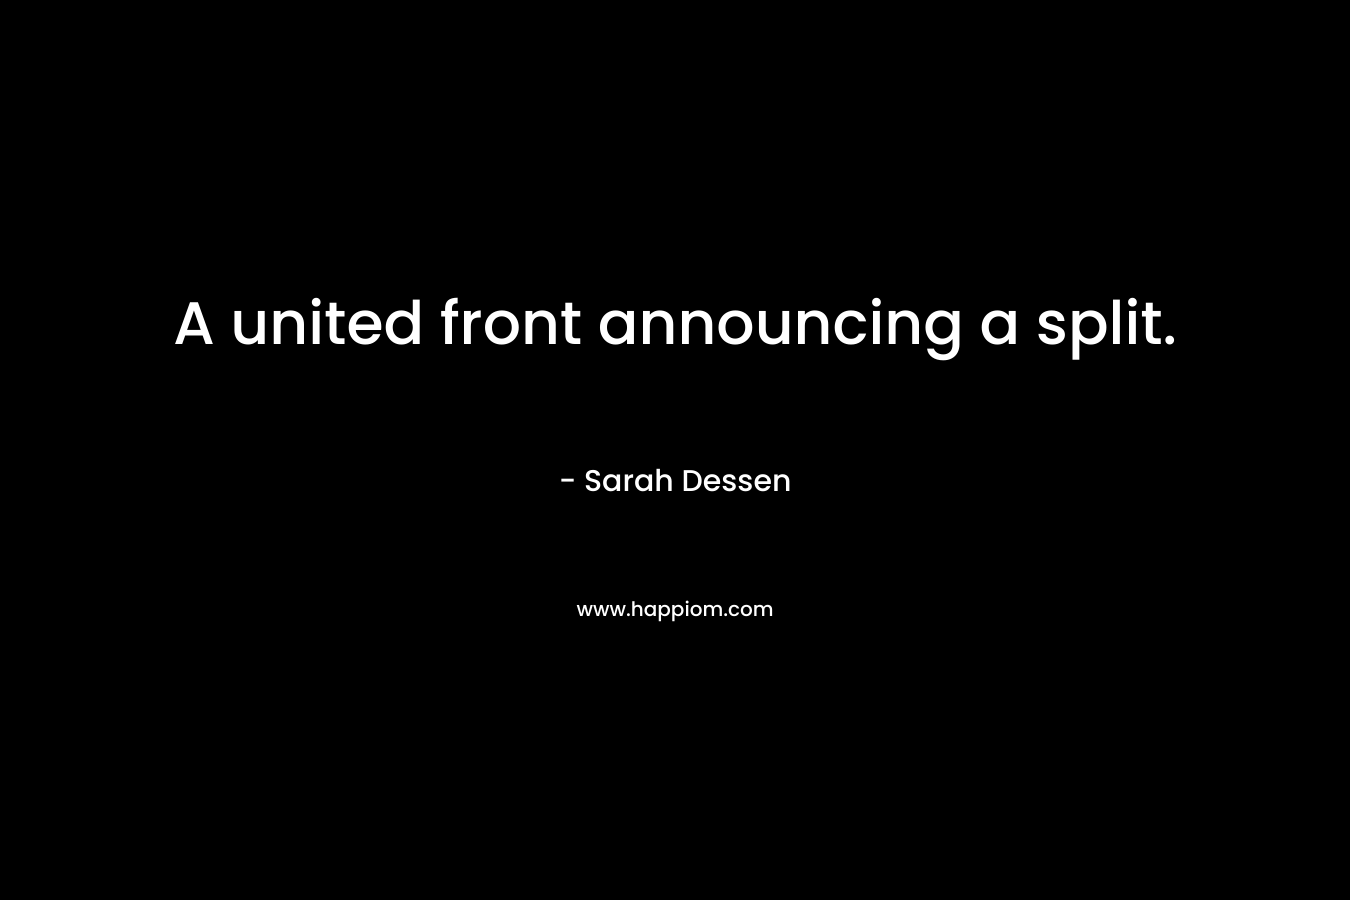 A united front announcing a split. – Sarah Dessen